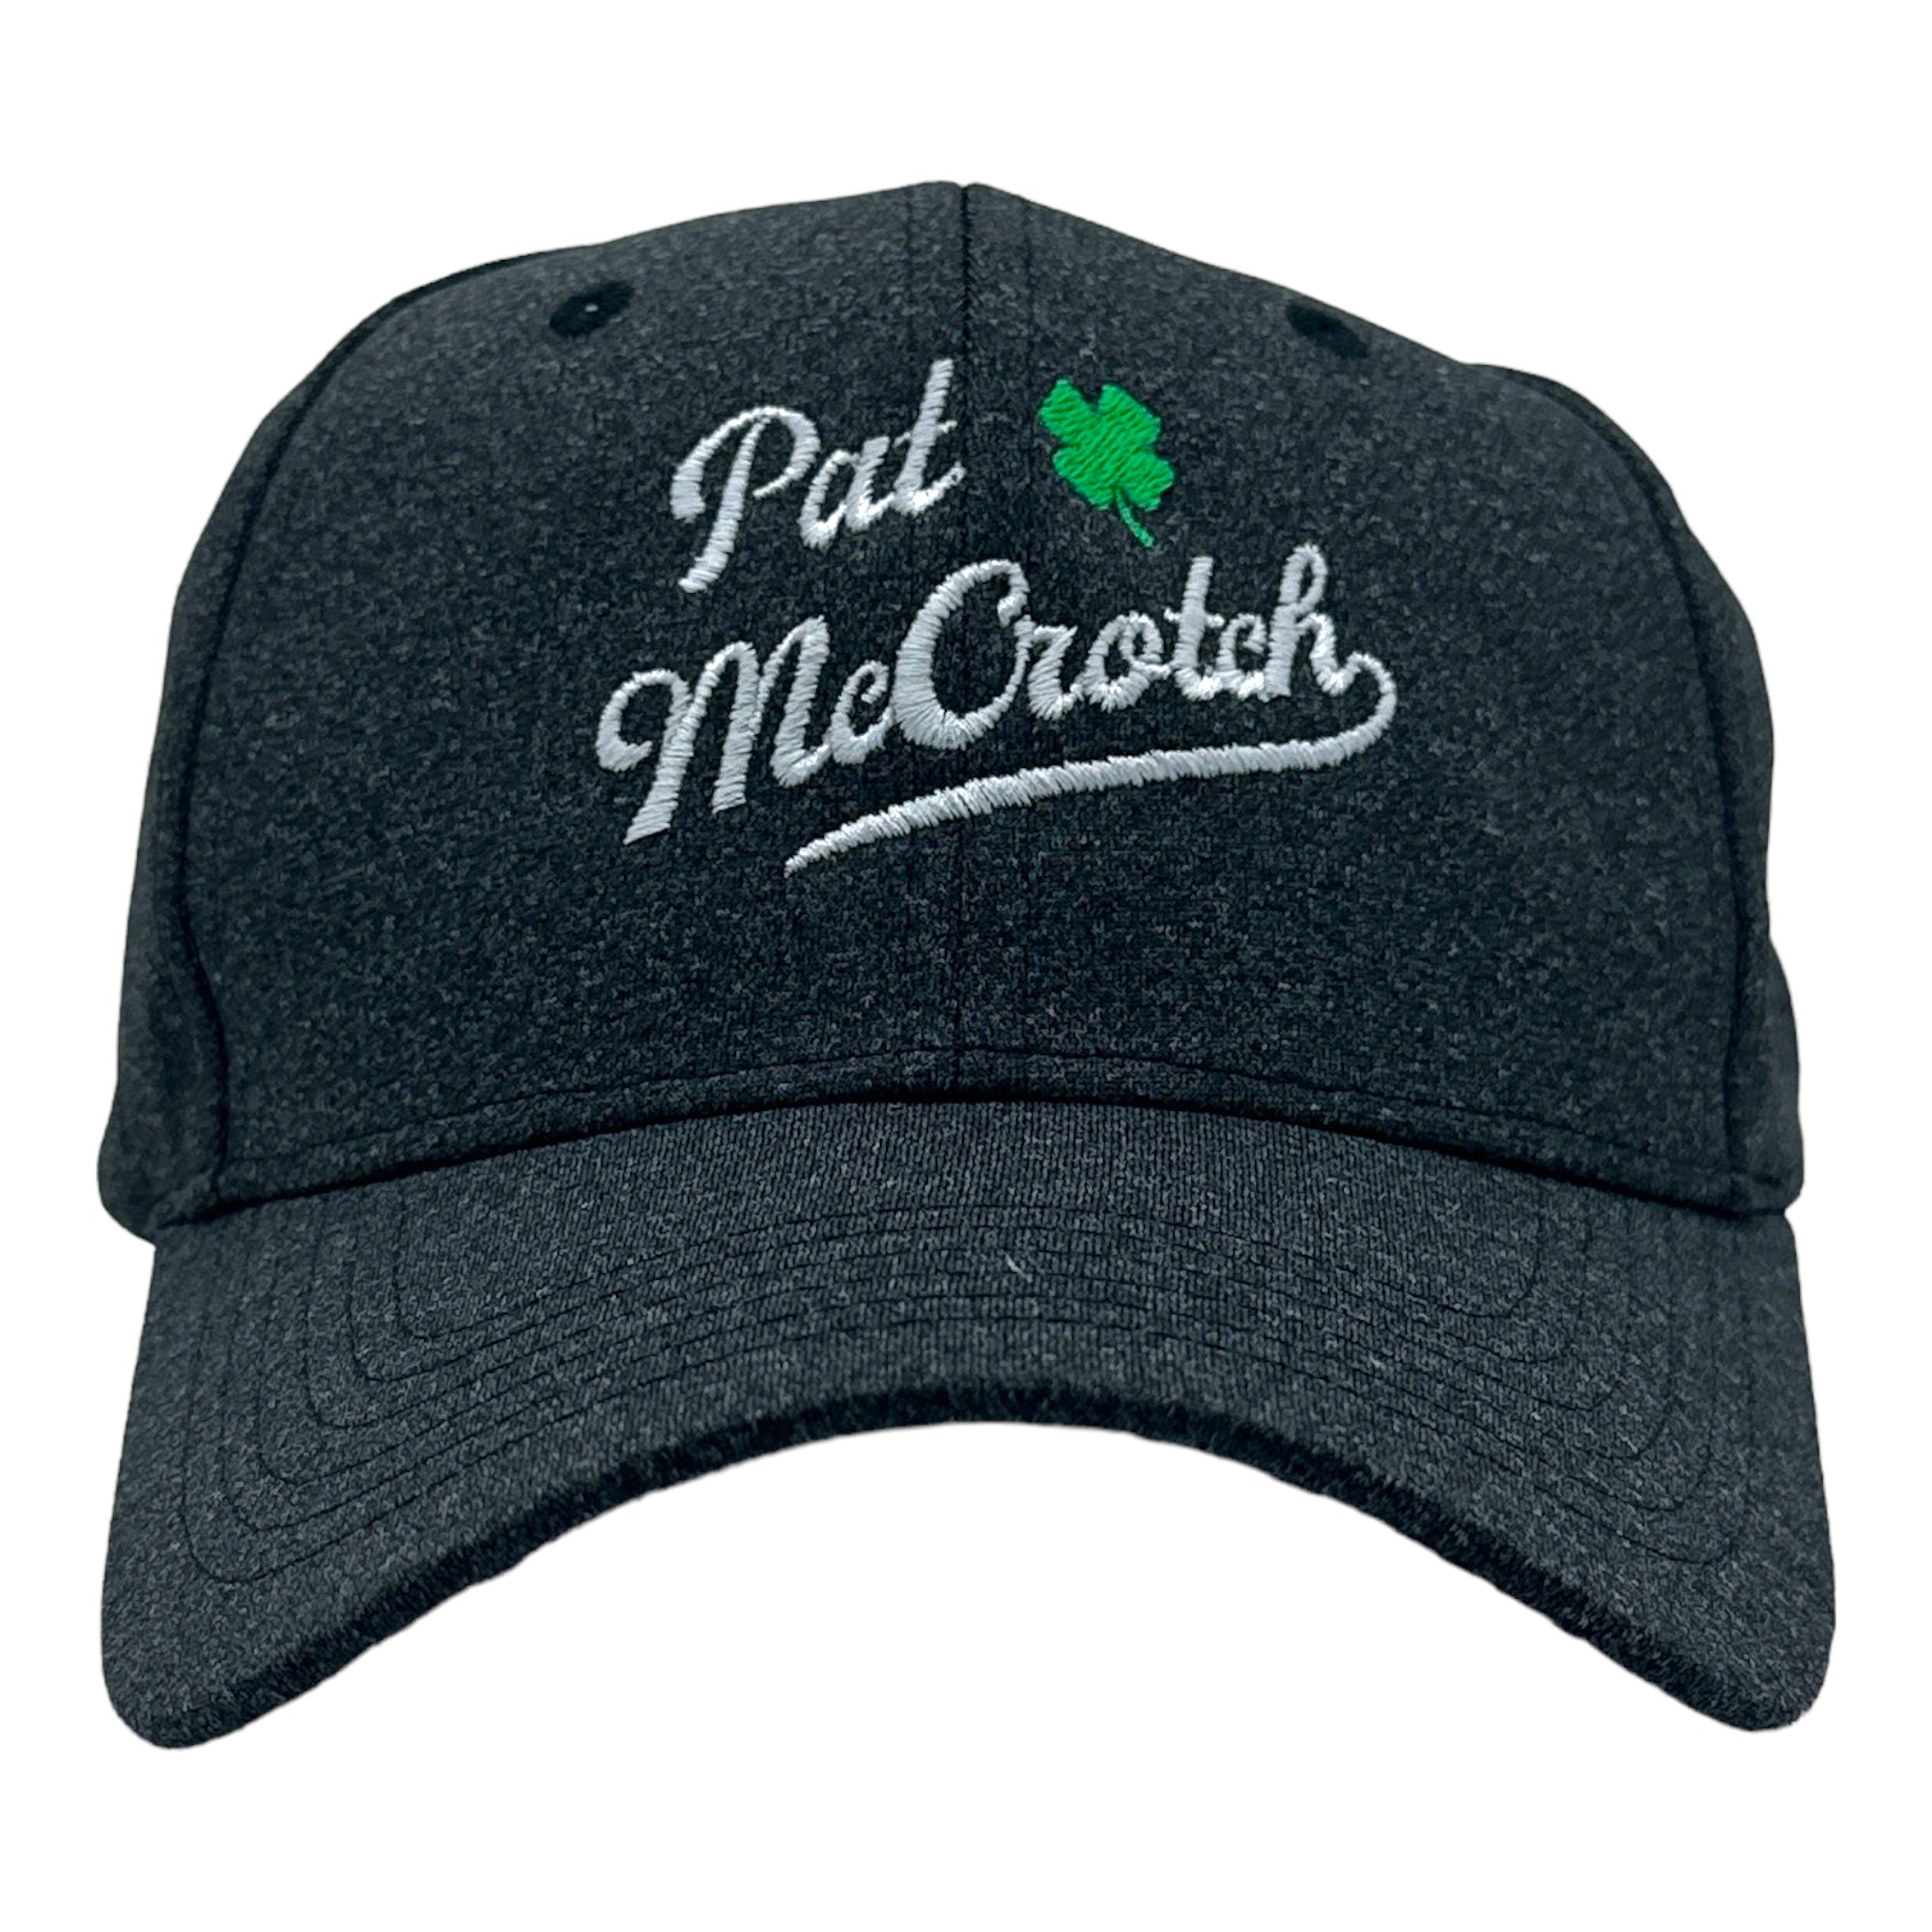 Funny Black - MCCROTCH Pat McCrotch Nerdy Saint Patrick's Day Tee